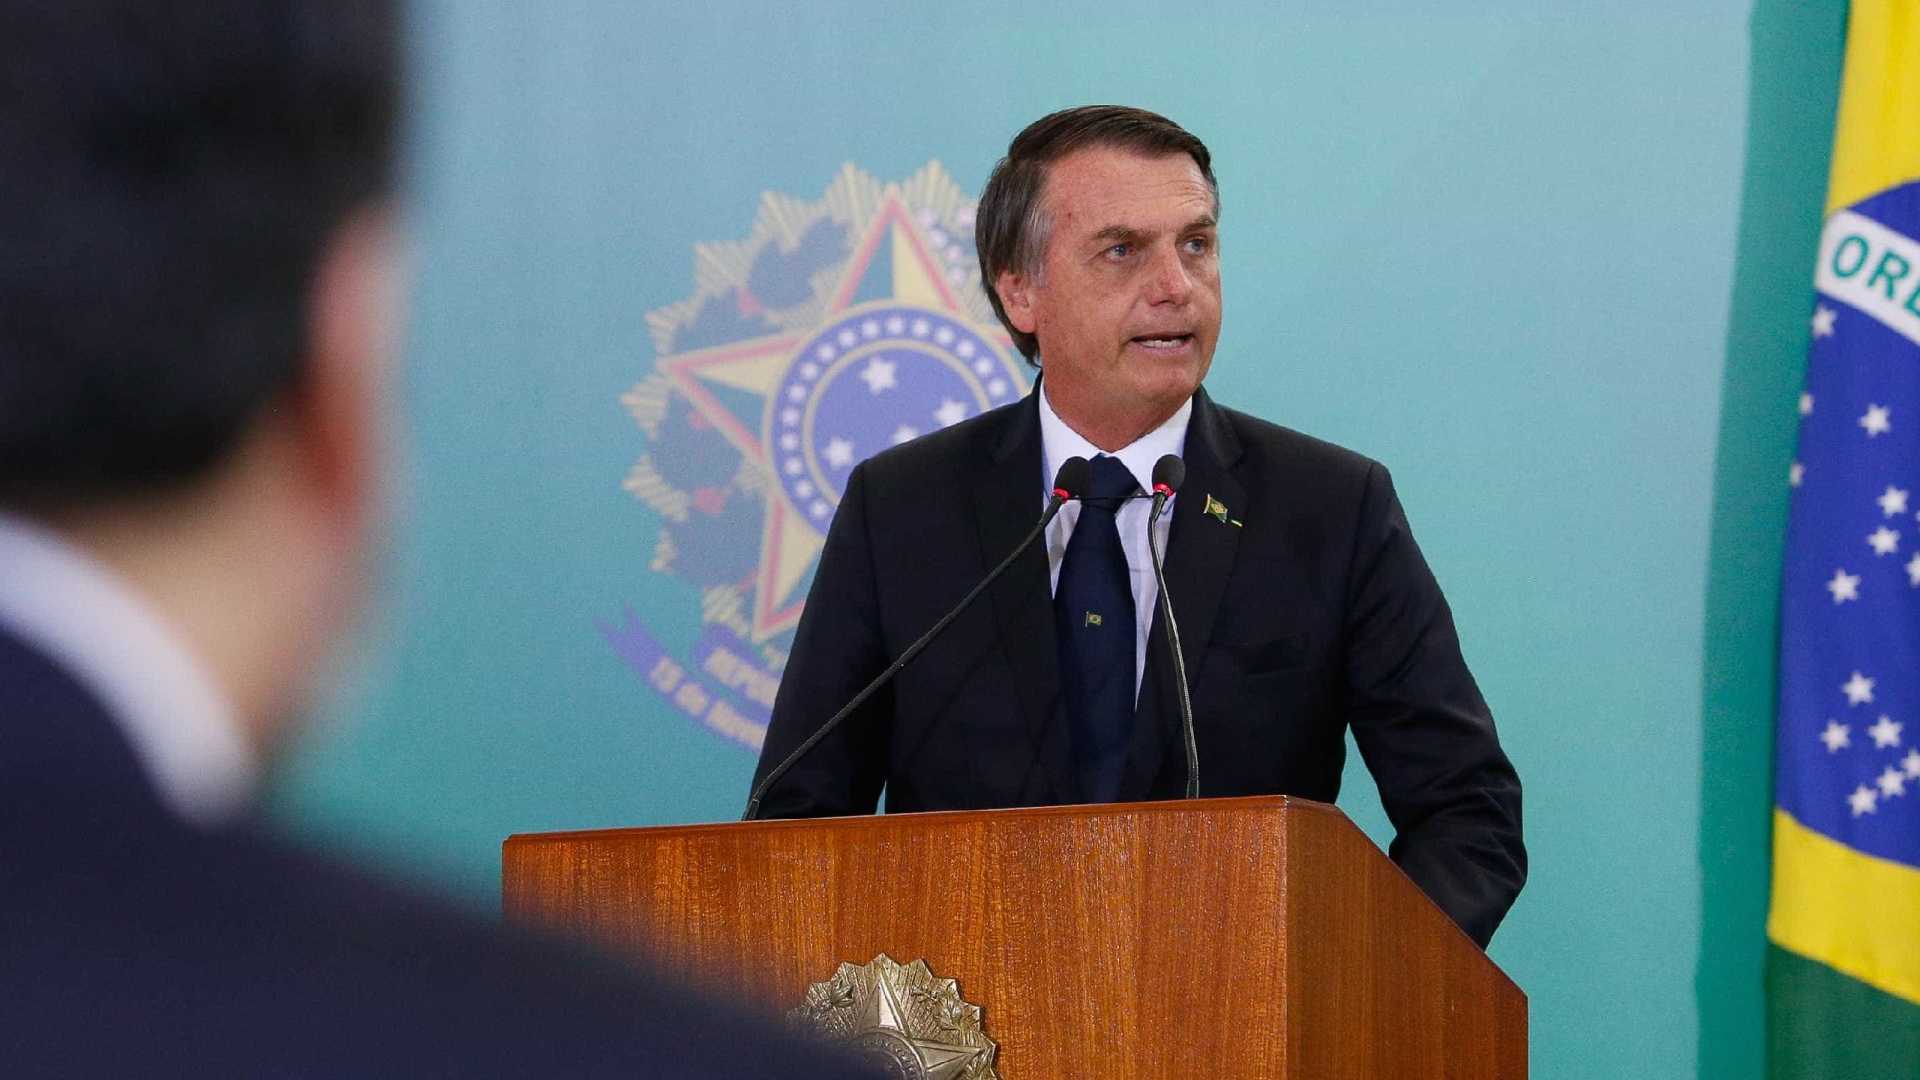 Presidente Jair Bolsonaro sanciona lei que cassa CNH de condenados por 5 tipos de crime